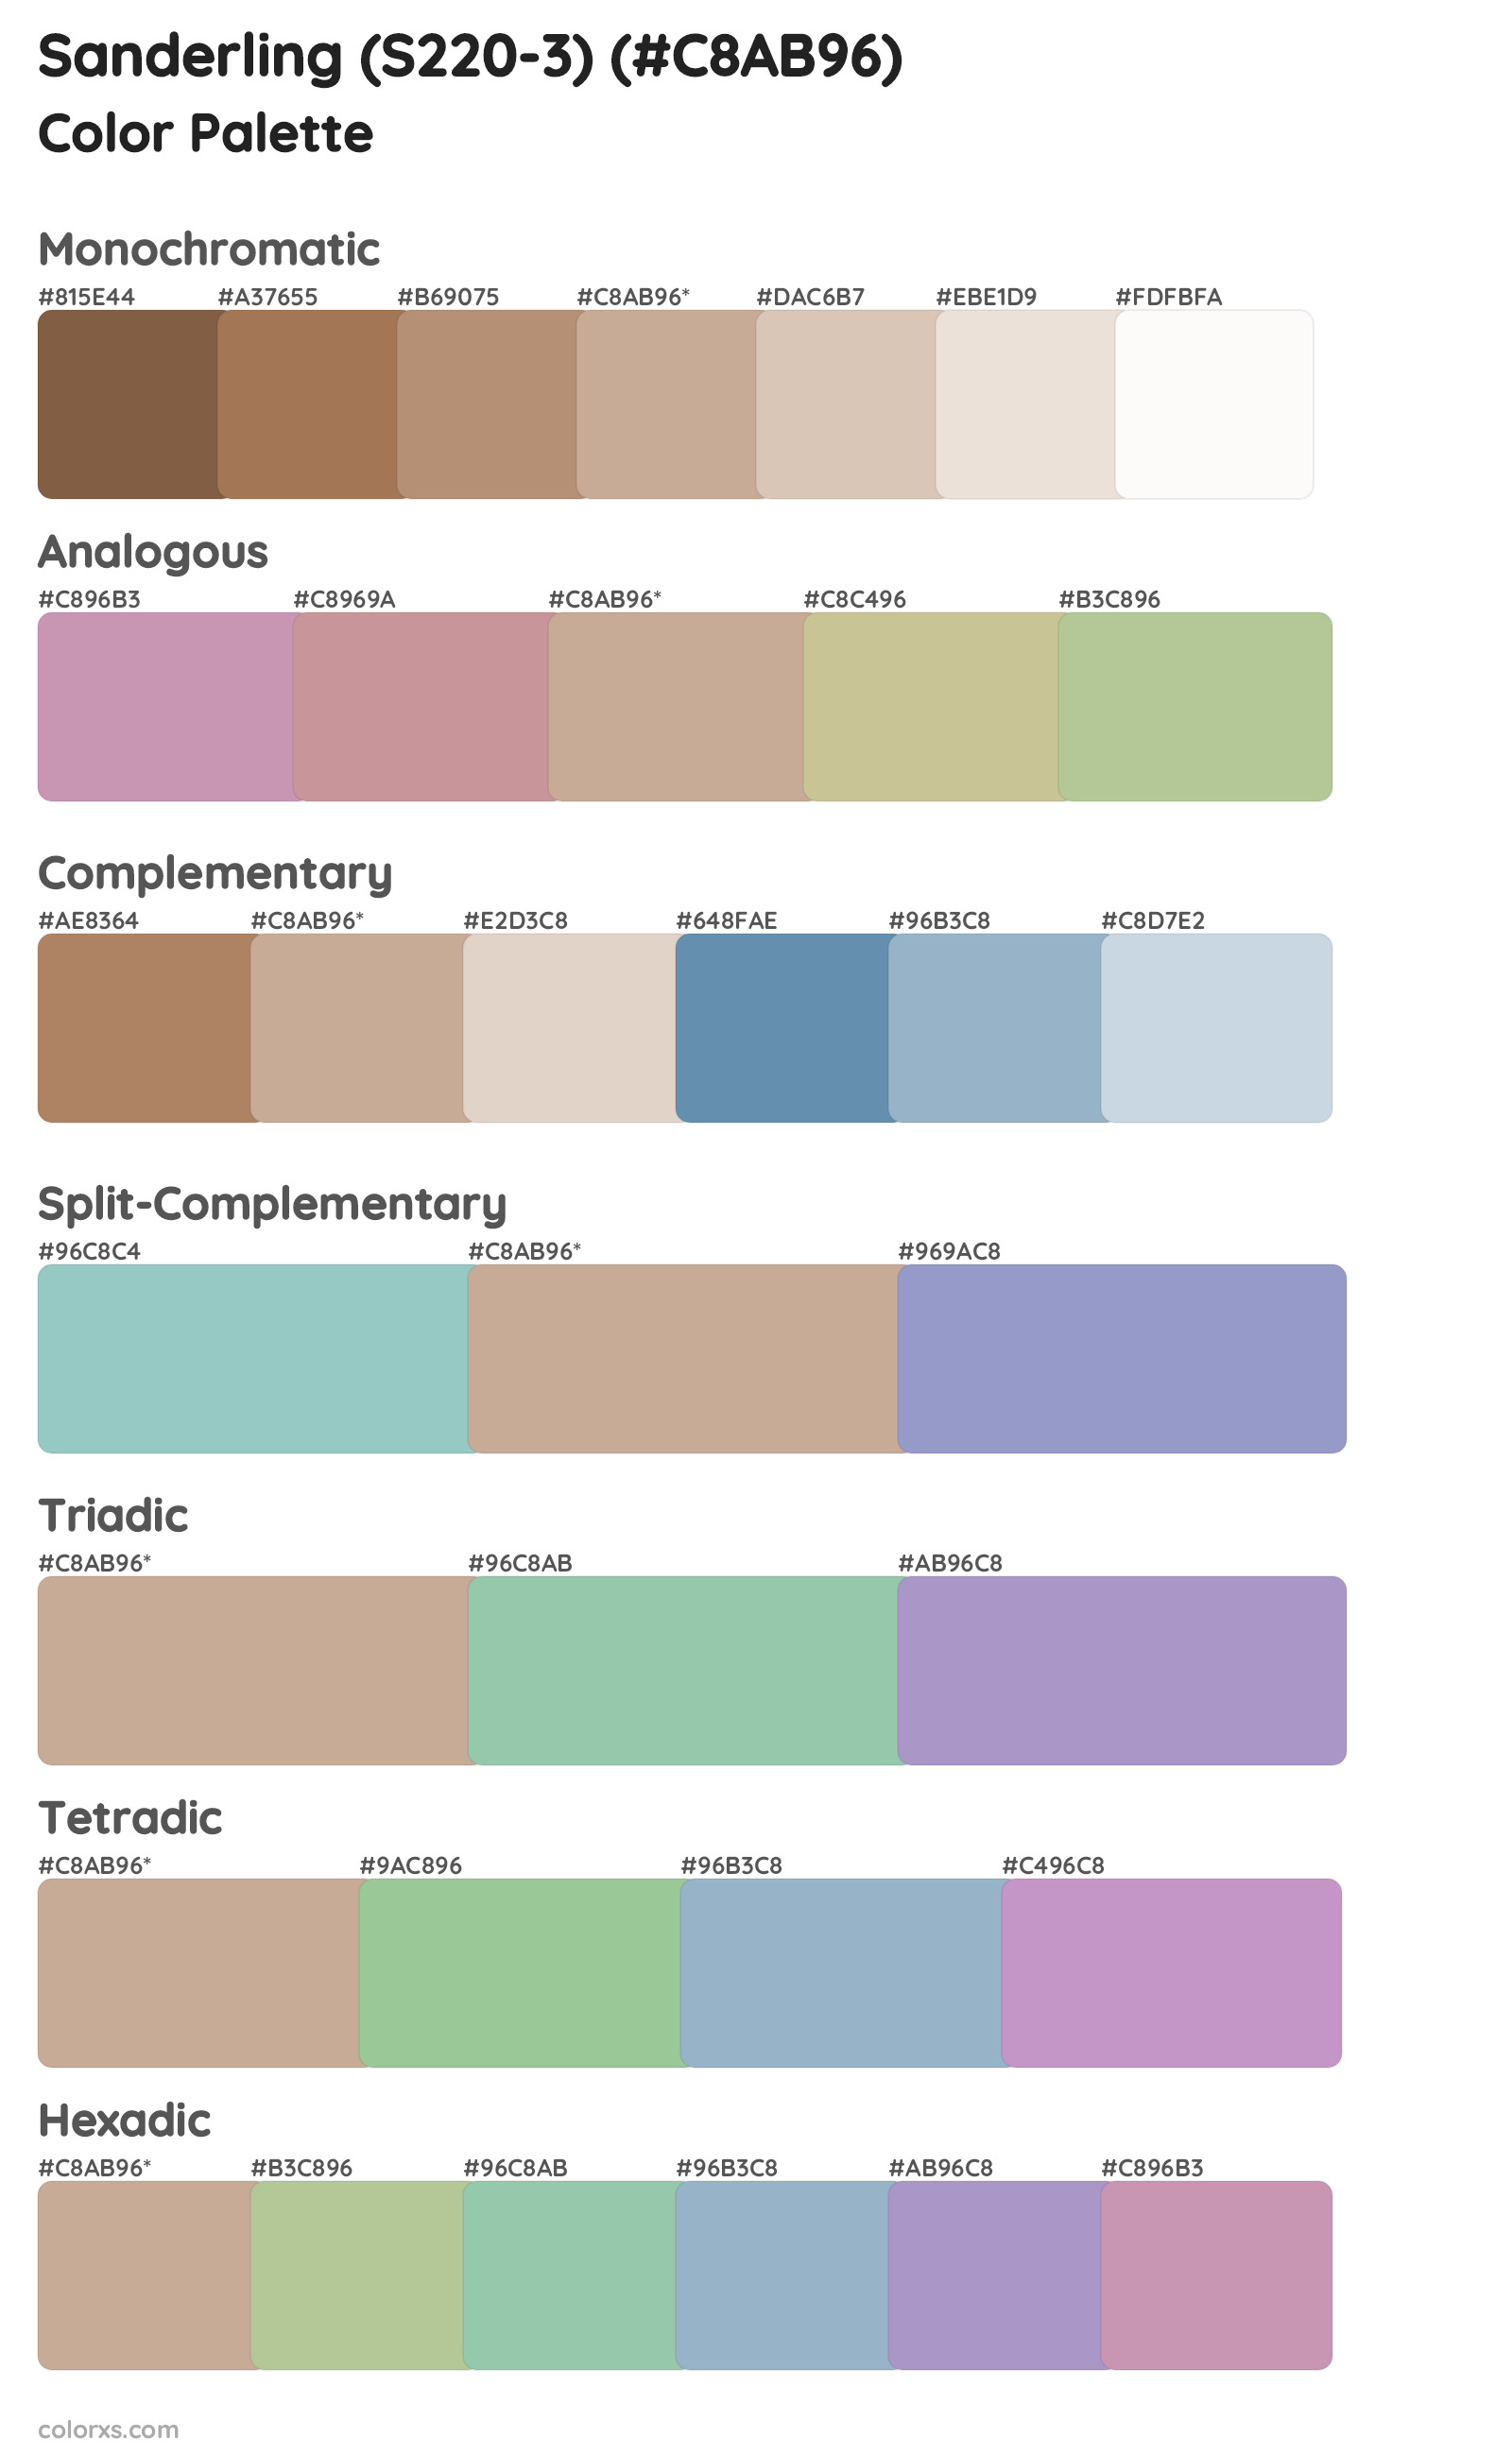 Sanderling (S220-3) Color Scheme Palettes